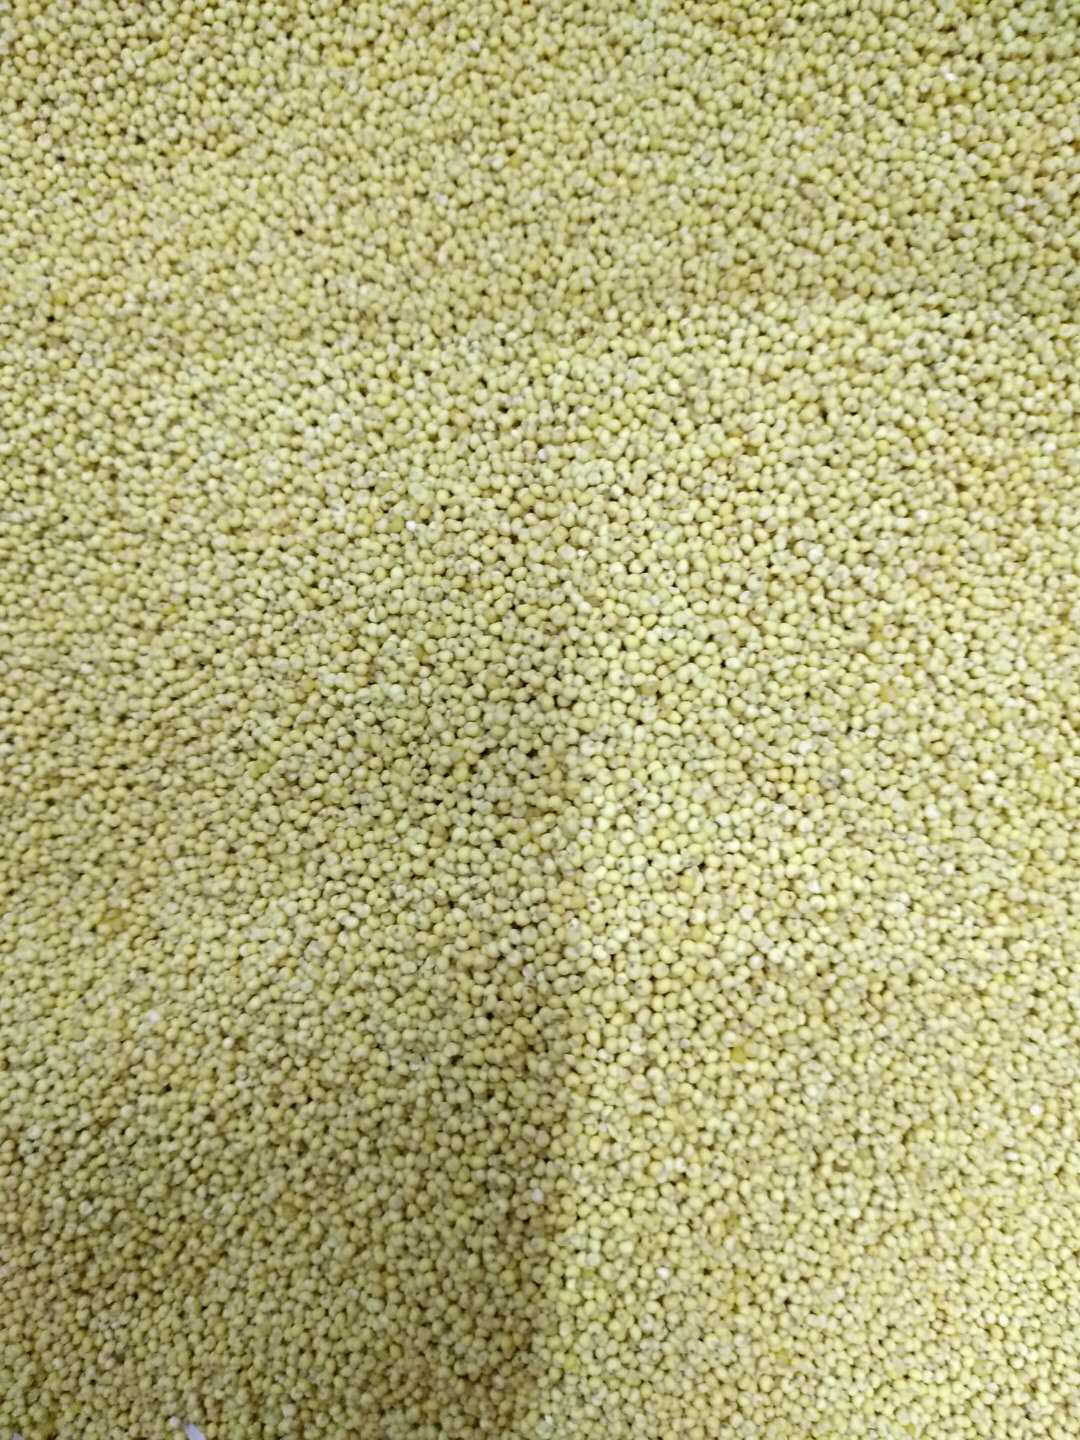 山东莱州黄豆的营养价值